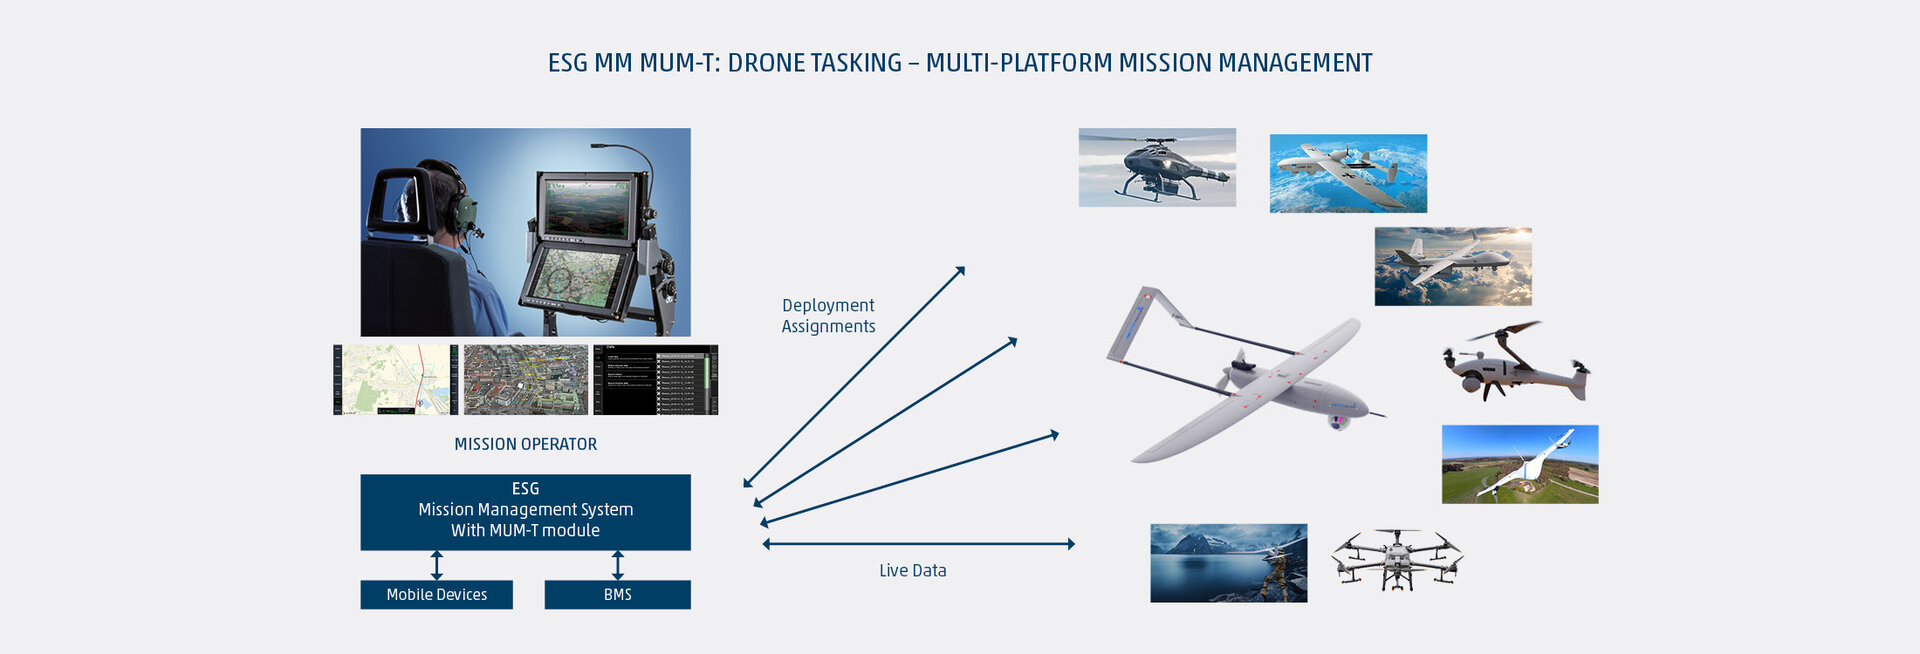 Manned-Unmanned Teaming ist nicht nur für den Luftraum einsetzbar sondern auch flexibel konfigurierbar für den Einsatz der Operateure an Land, in der Luft und auf See.